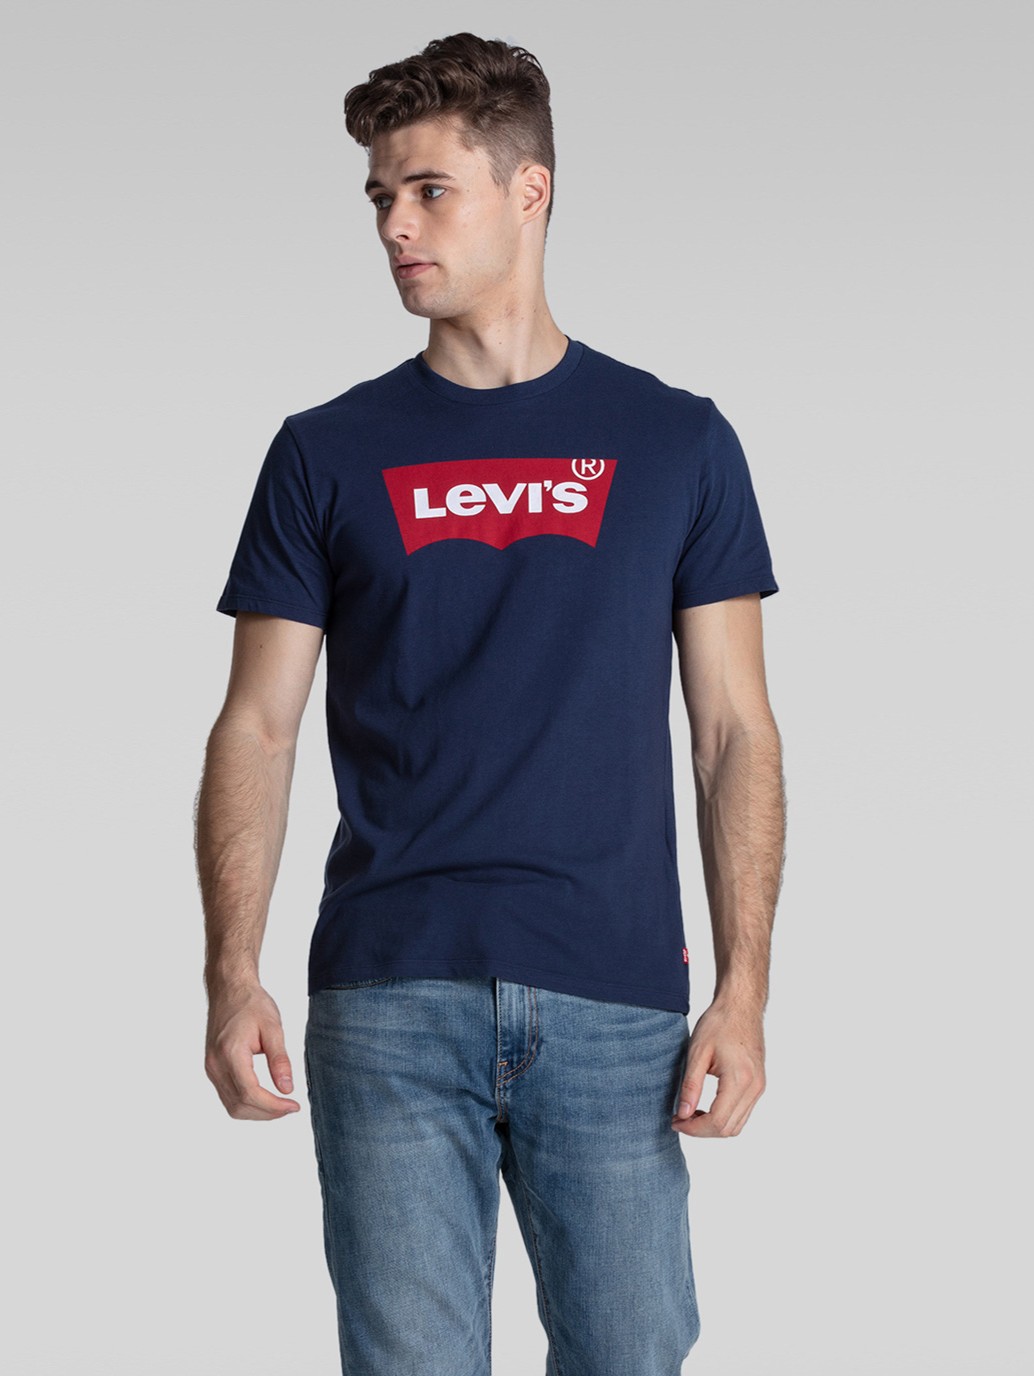 Levis T Shirt Cheap Sale, SAVE 56%.